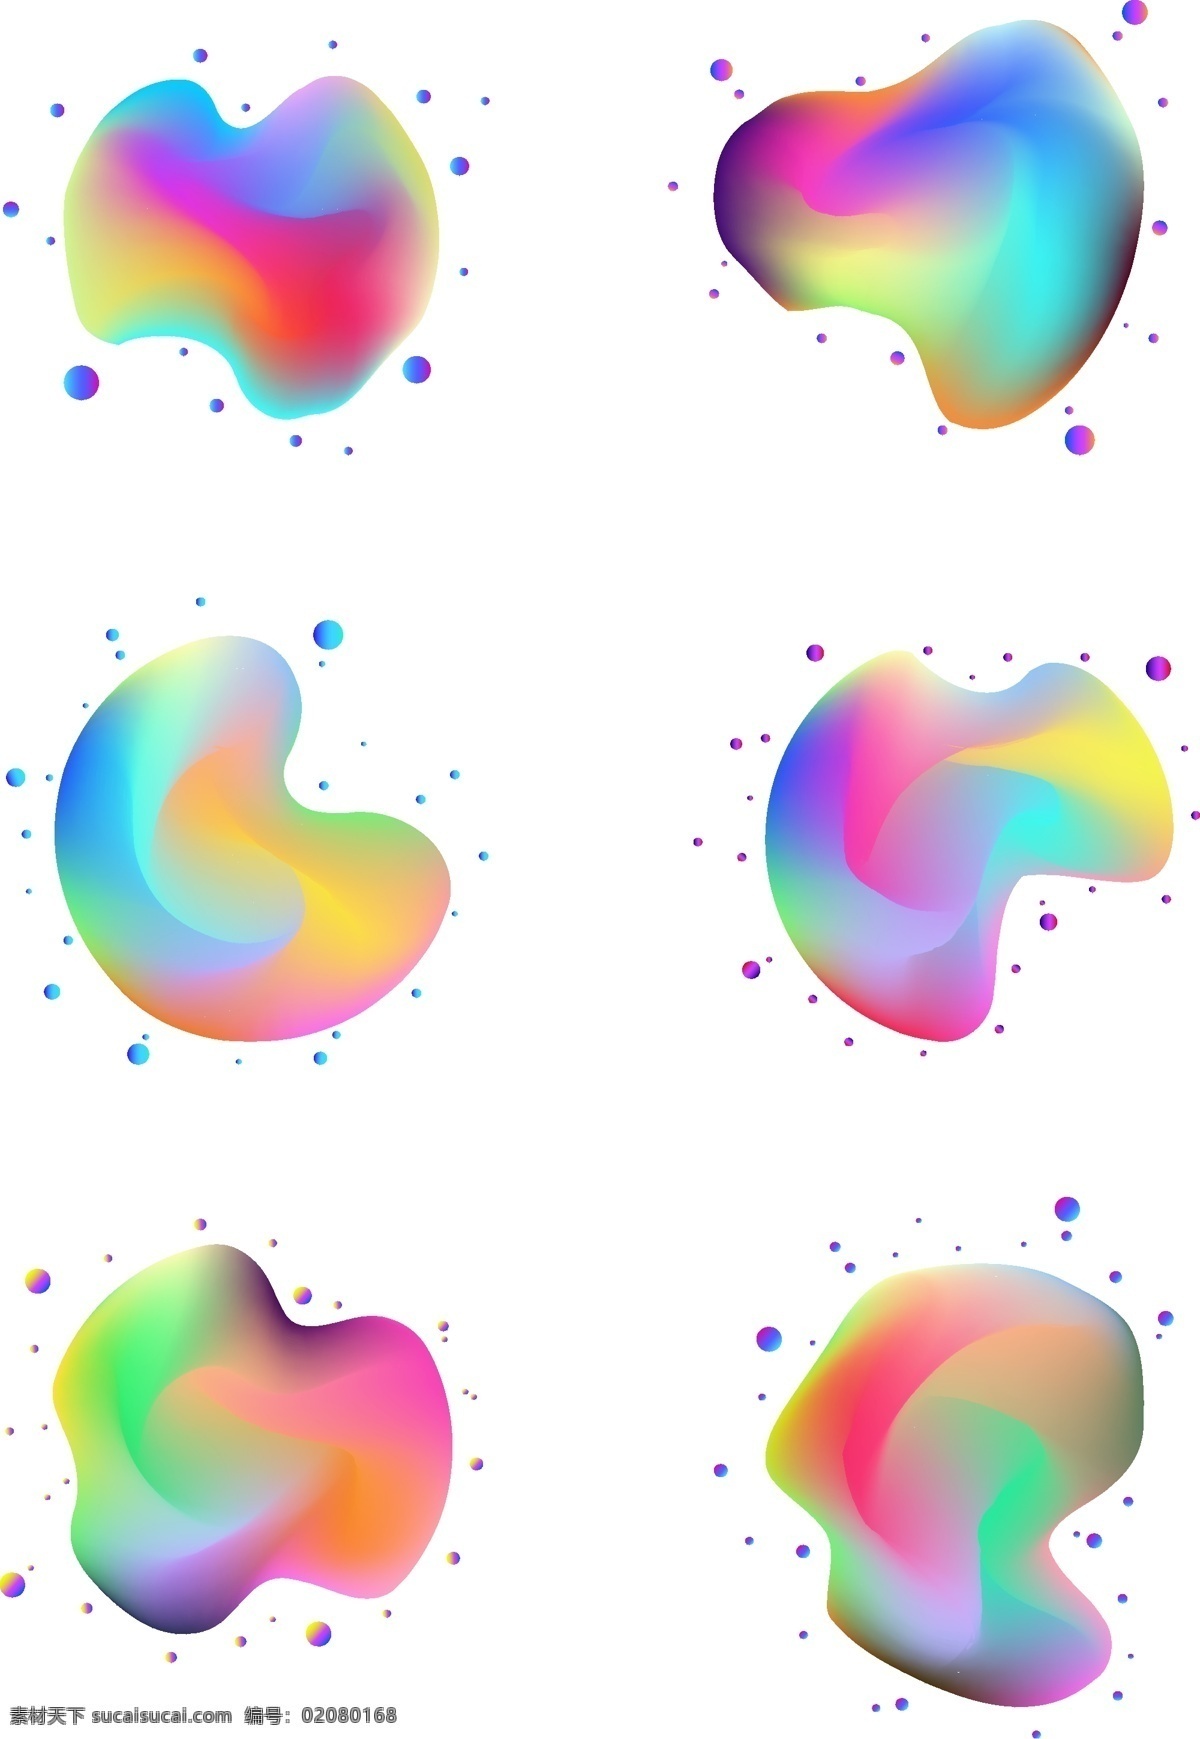 流体 渐变 曲面 图形 元素 合集 流体渐变 渐变配色 曲面图案 渐变元素 漂浮圆点 曲面元素